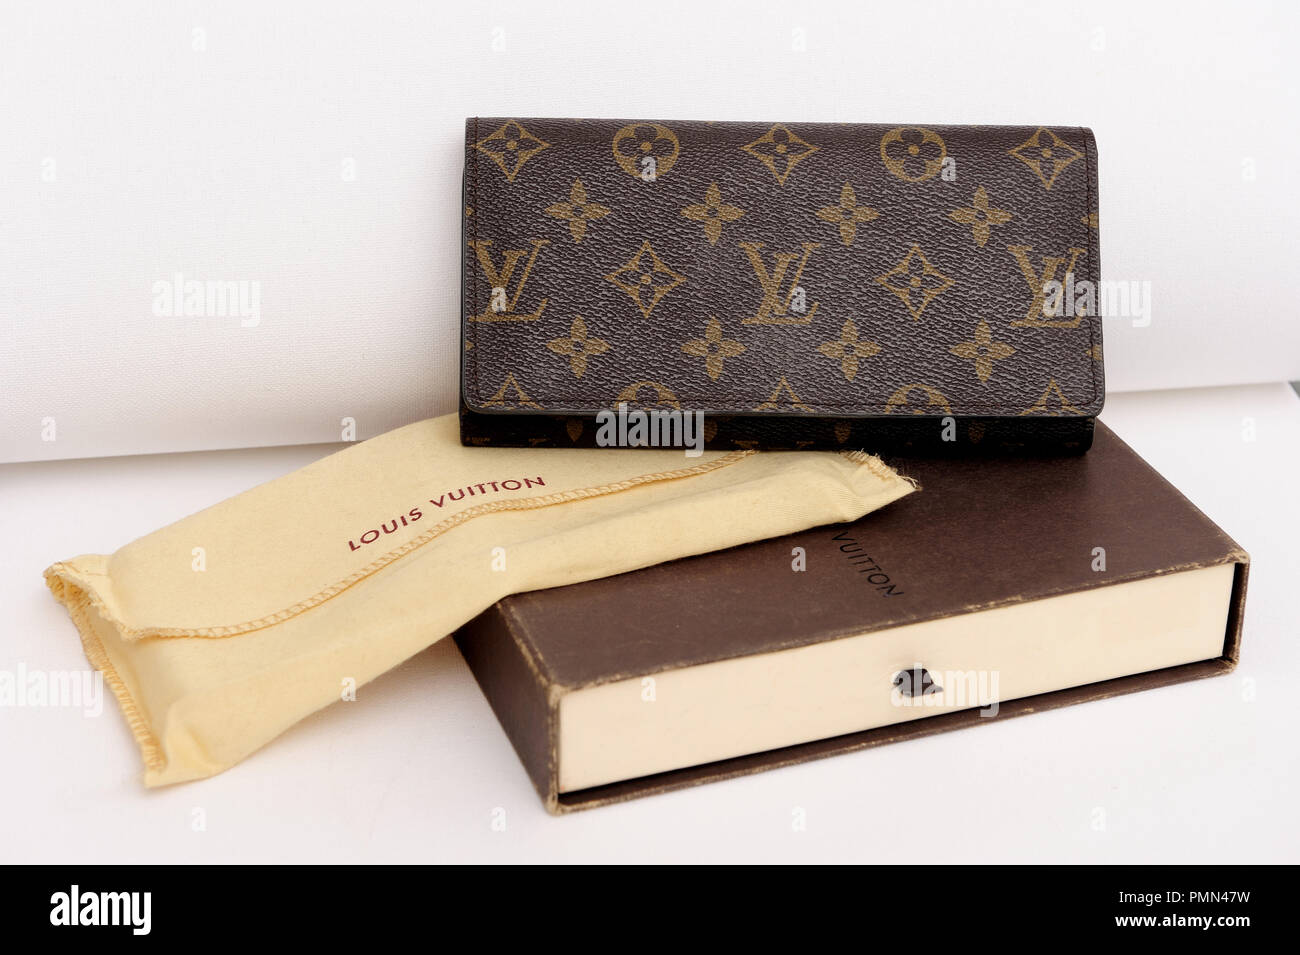 Louis Vuitton, fashion, fashionable, elegant, classic, glamor, lifestyle, women, luxury,bag, style, lifestyle, fashion, outfit essentials, Stock Photo